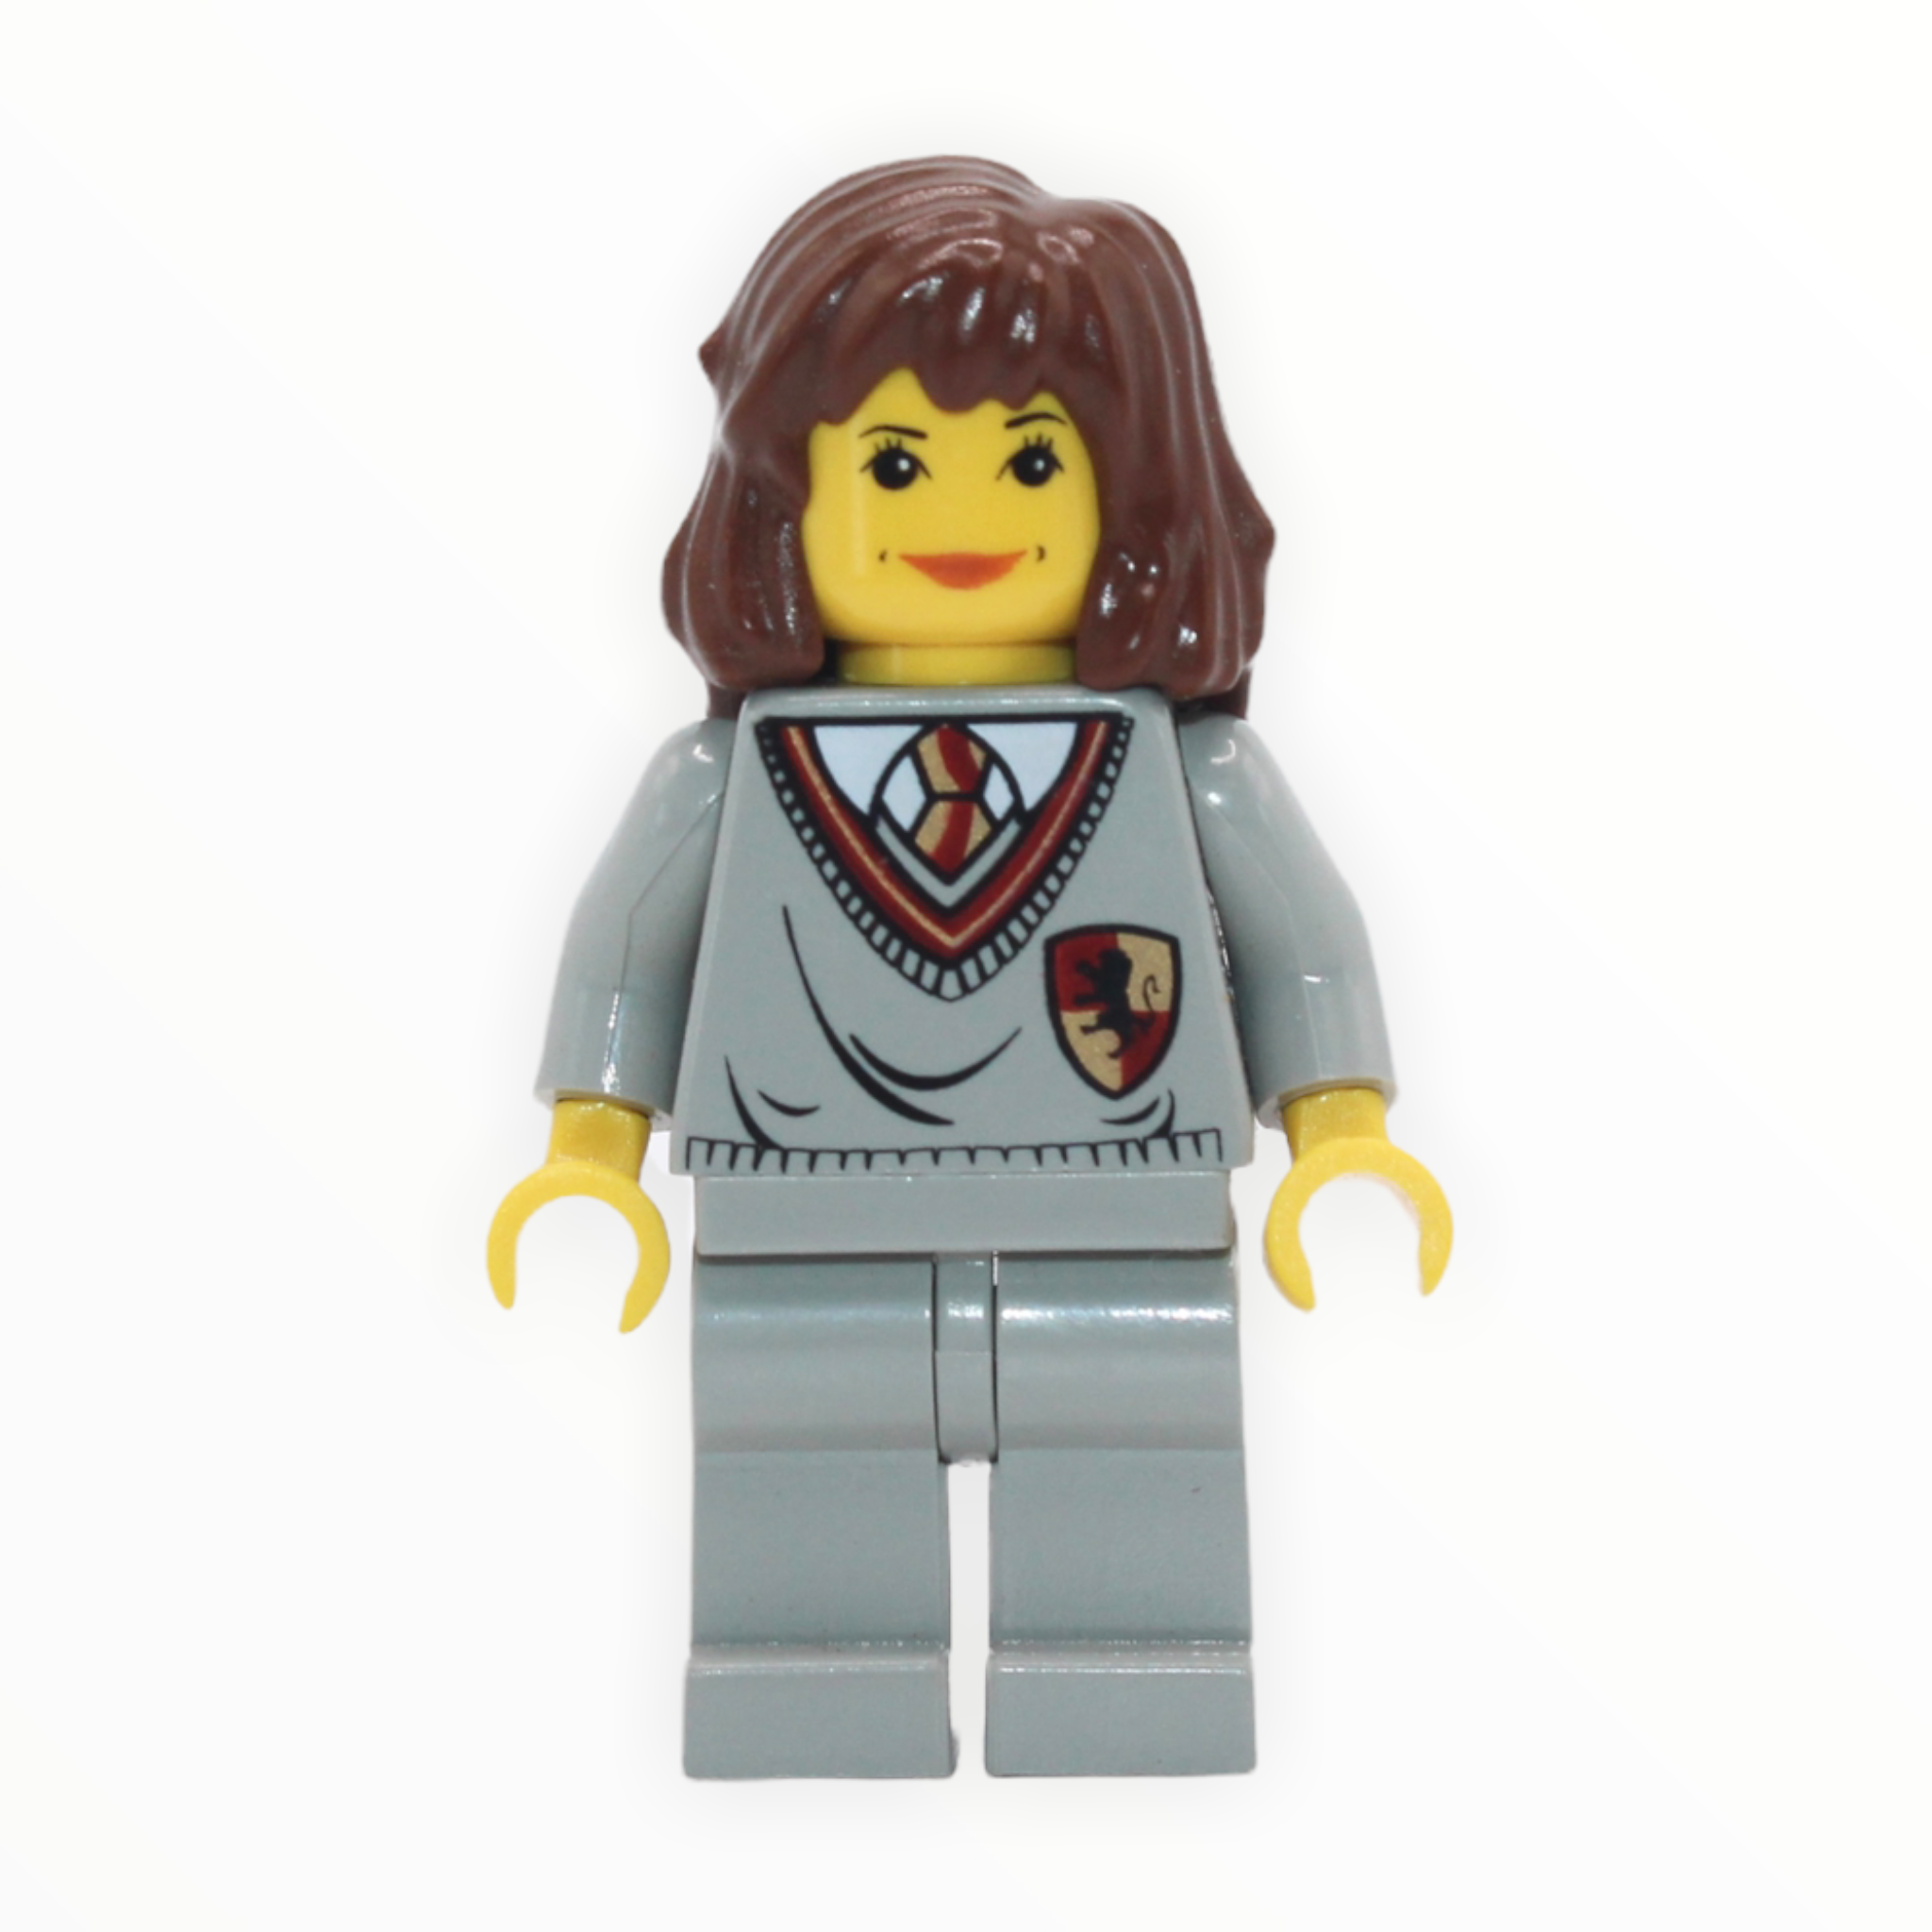 Hermione Granger (Gryffindor sweater, yellow skin)